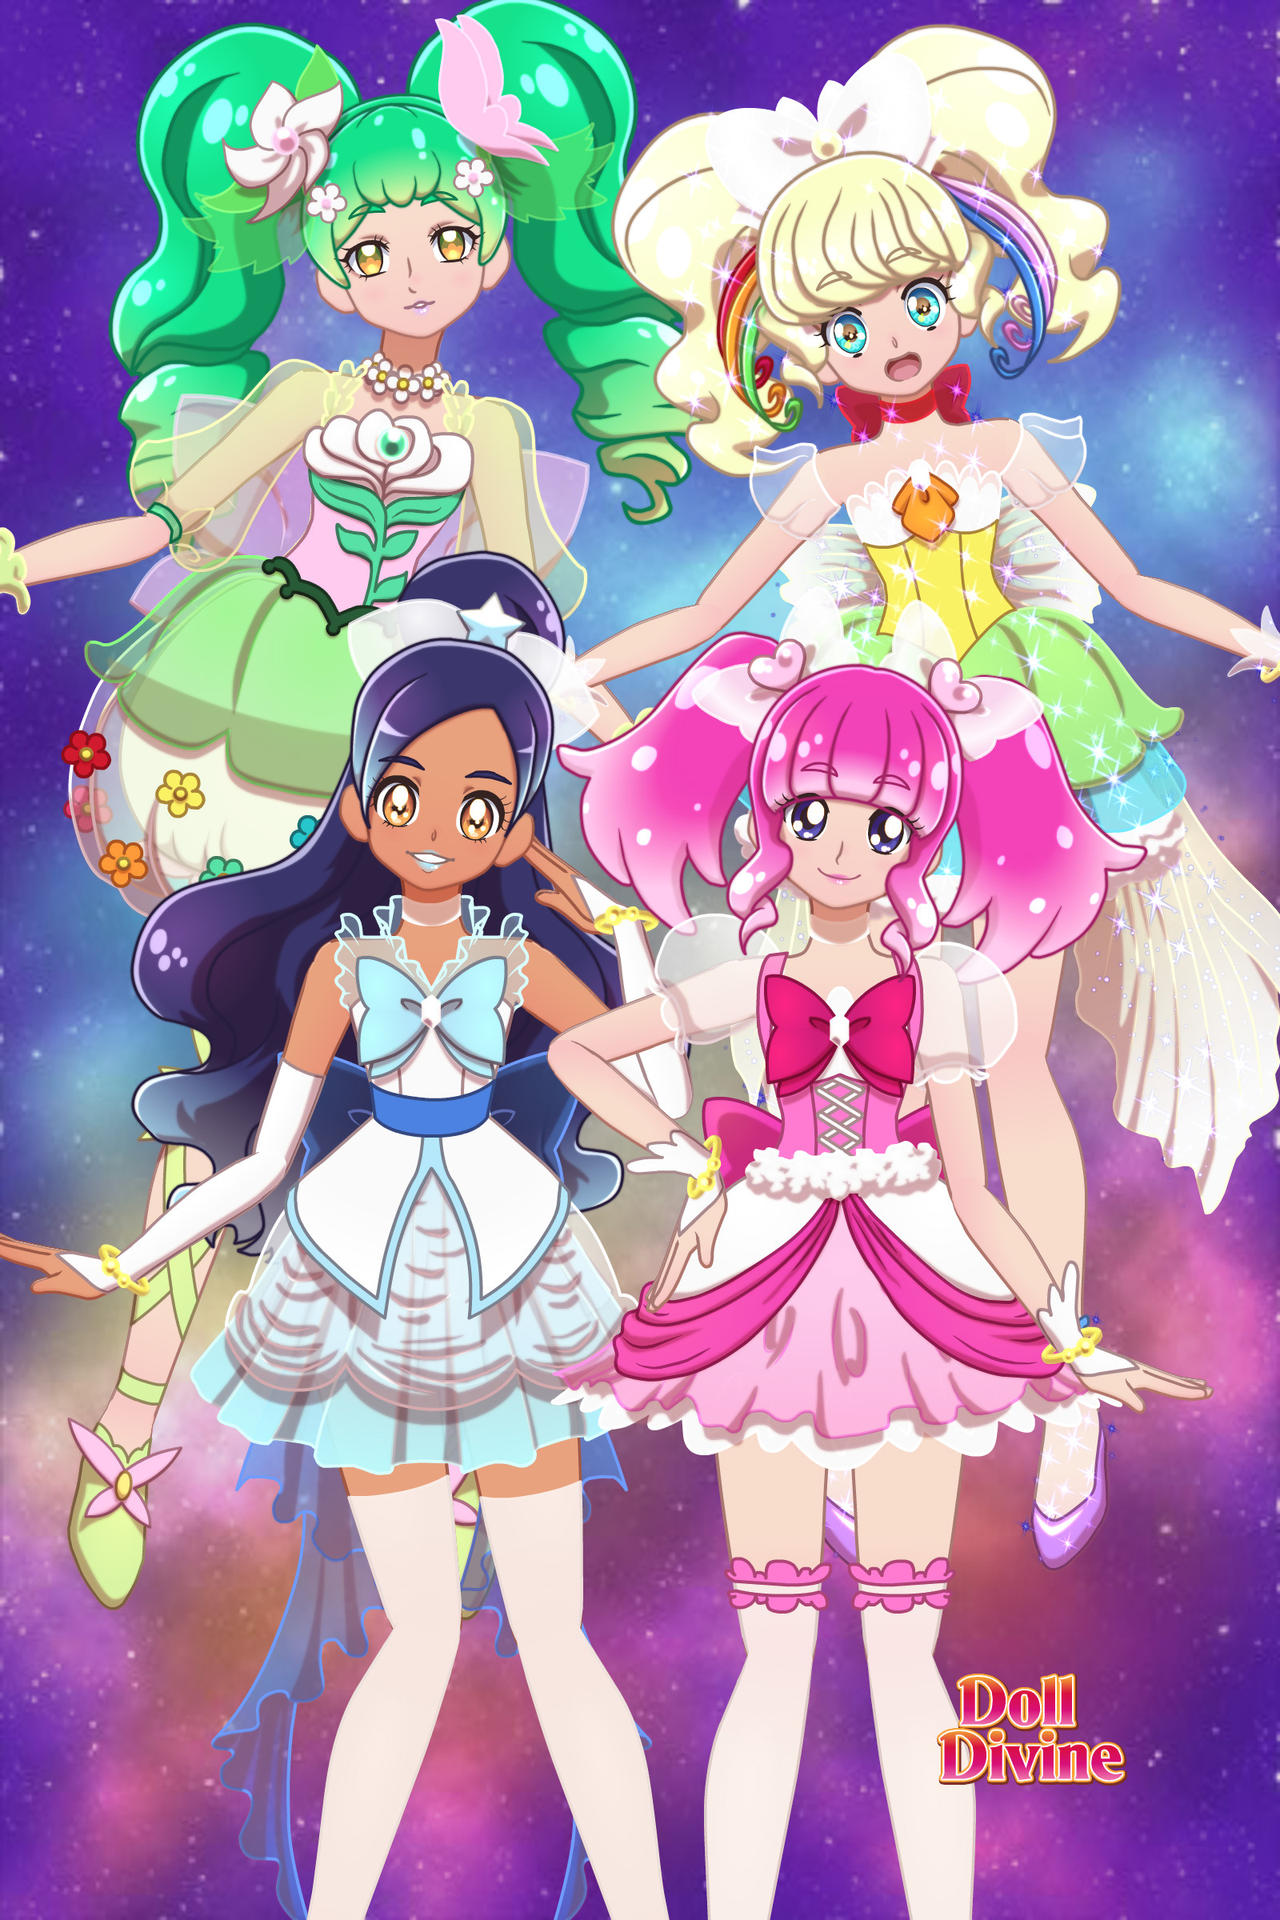 Futari wa Pretty Cure!: Reinos e Dimensões Mágicas